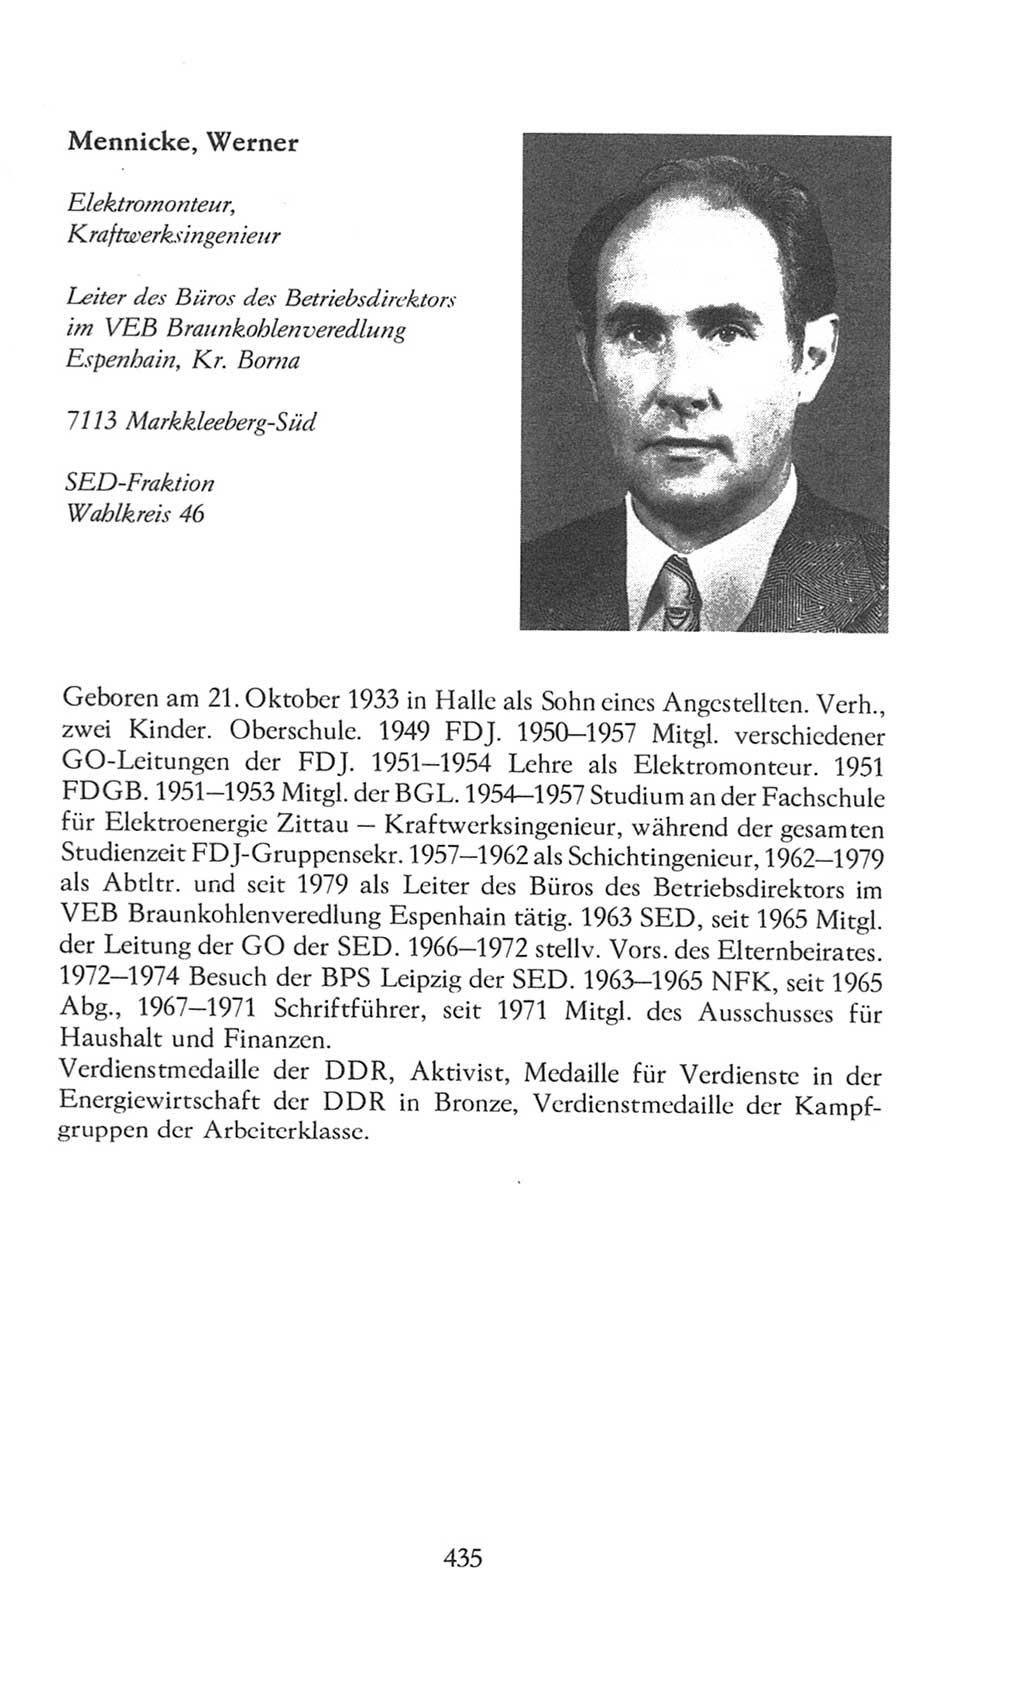 Volkskammer (VK) der Deutschen Demokratischen Republik (DDR), 8. Wahlperiode 1981-1986, Seite 435 (VK. DDR 8. WP. 1981-1986, S. 435)